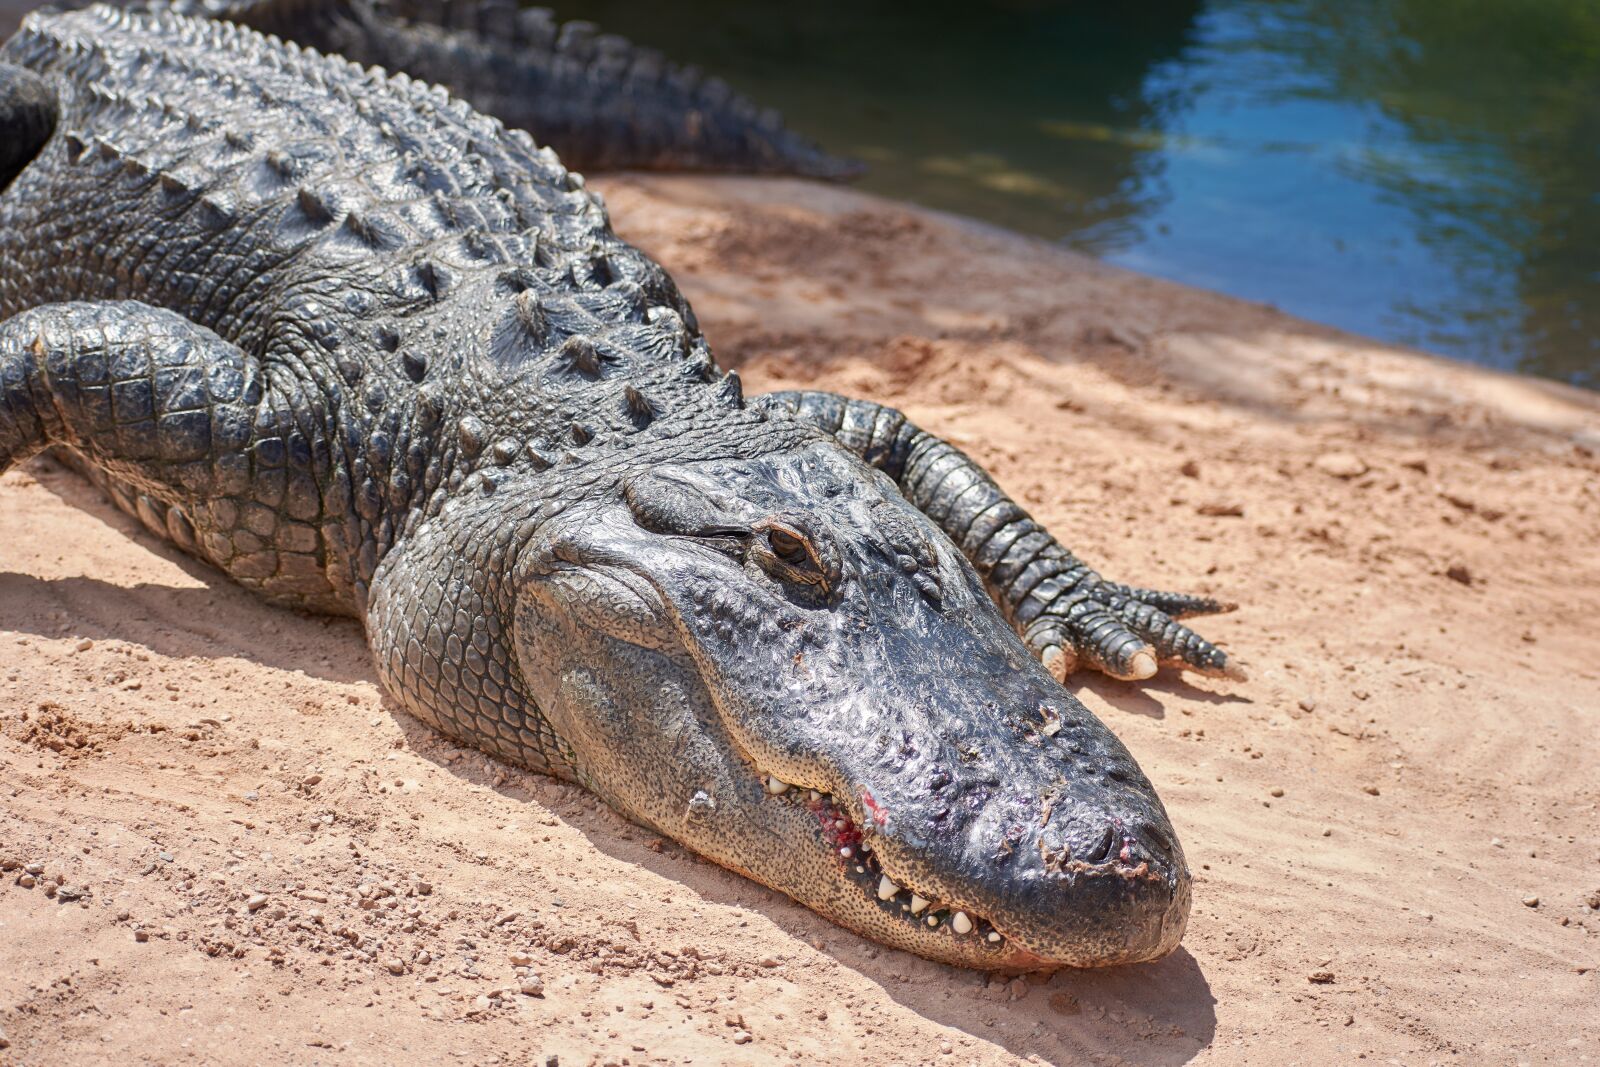 Nikon AF-P DX NIKKOR 70-300mm f/4.5-6.3G ED VR sample photo. Crocodile, alligator, dangerous photography